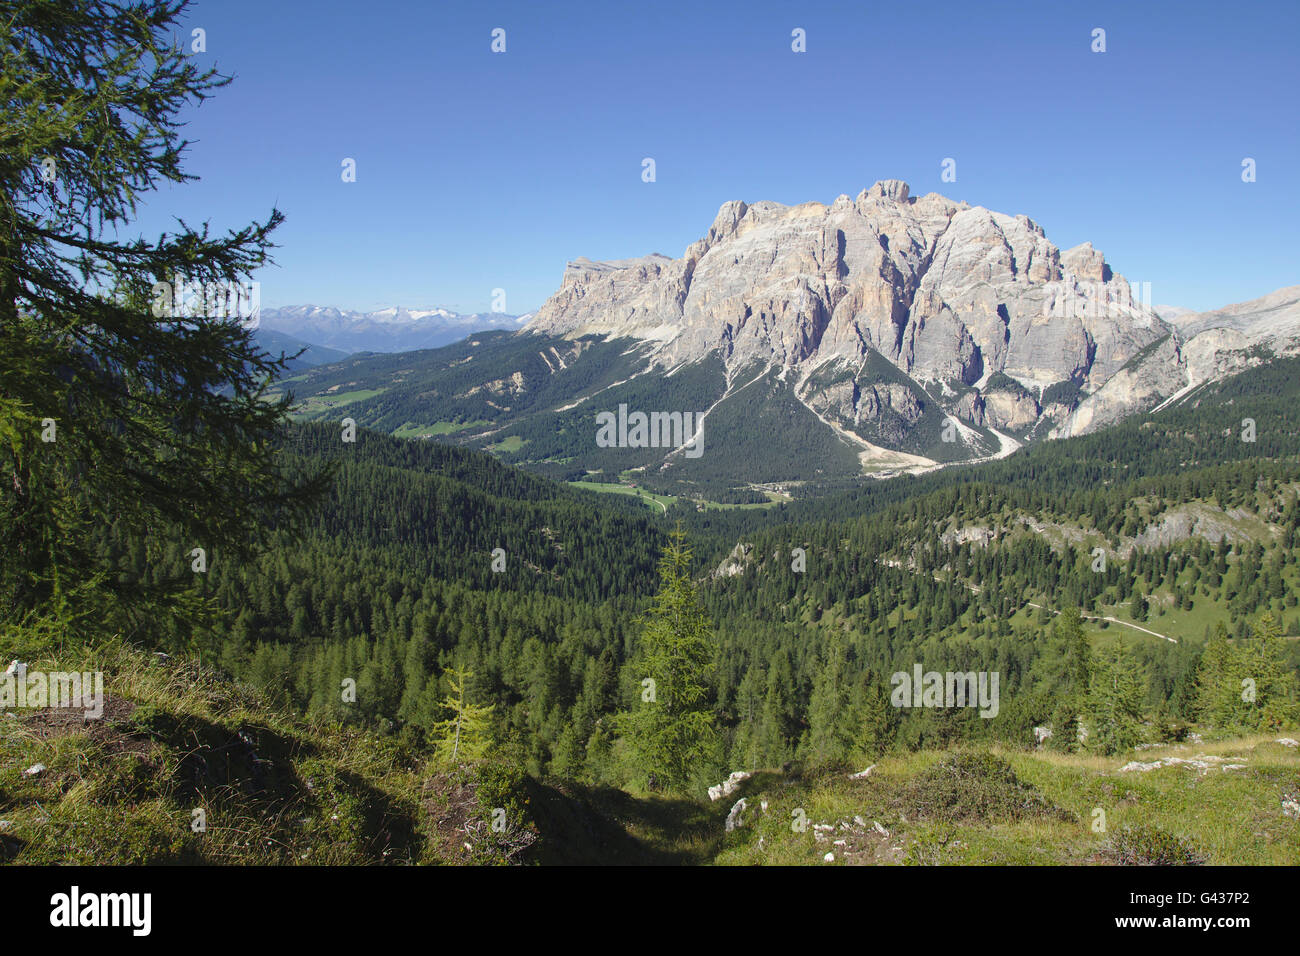 Lavarella, Cunturines, Fanes gruppo da Settsass, Dolomiti, Italia Foto Stock